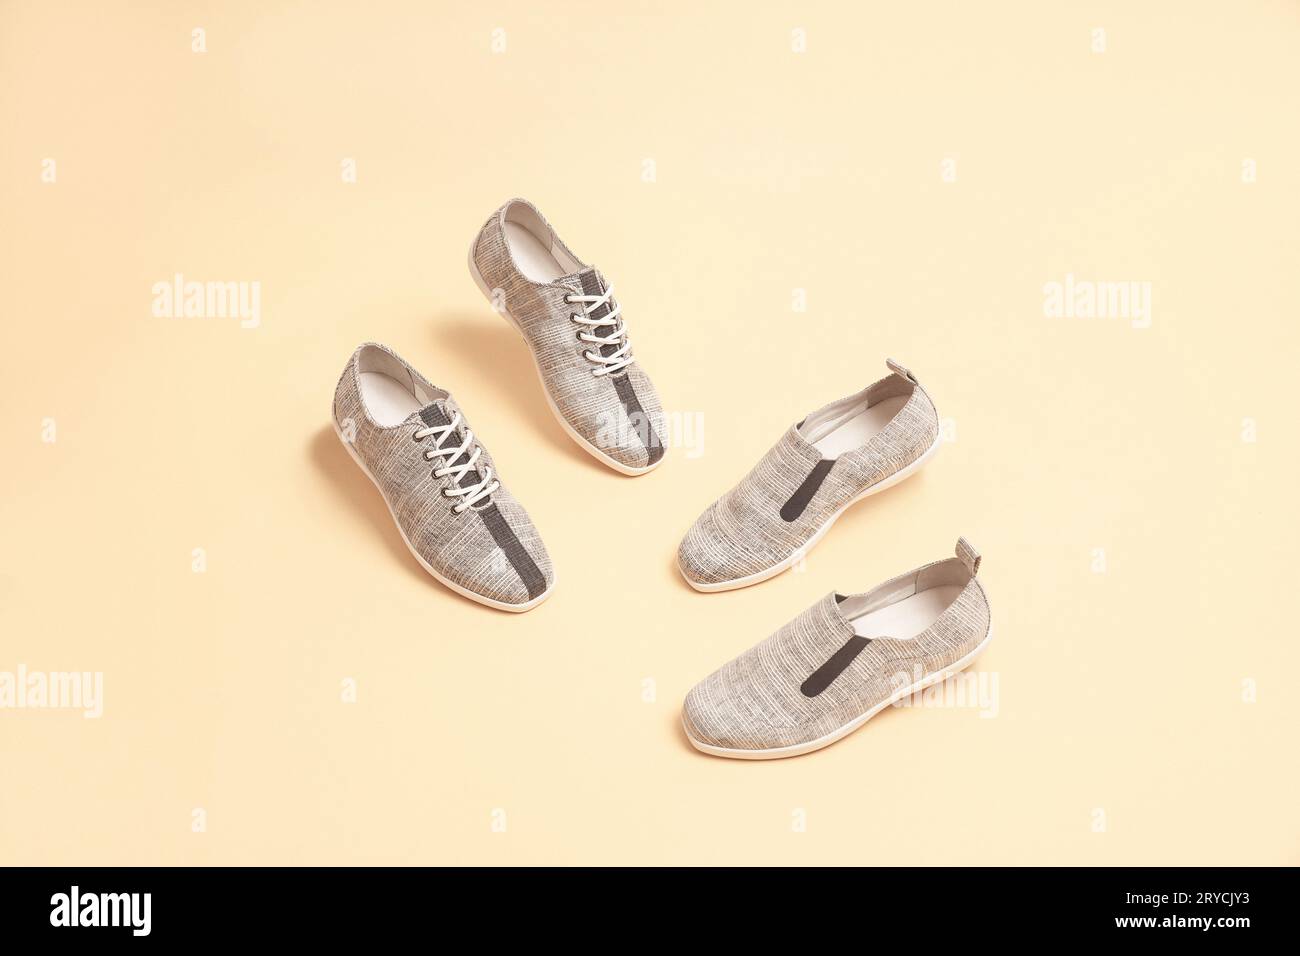 Eleganti sneaker di colore grigio isolate su sfondo beige; spazio per il testo; vista in prospettiva Foto Stock